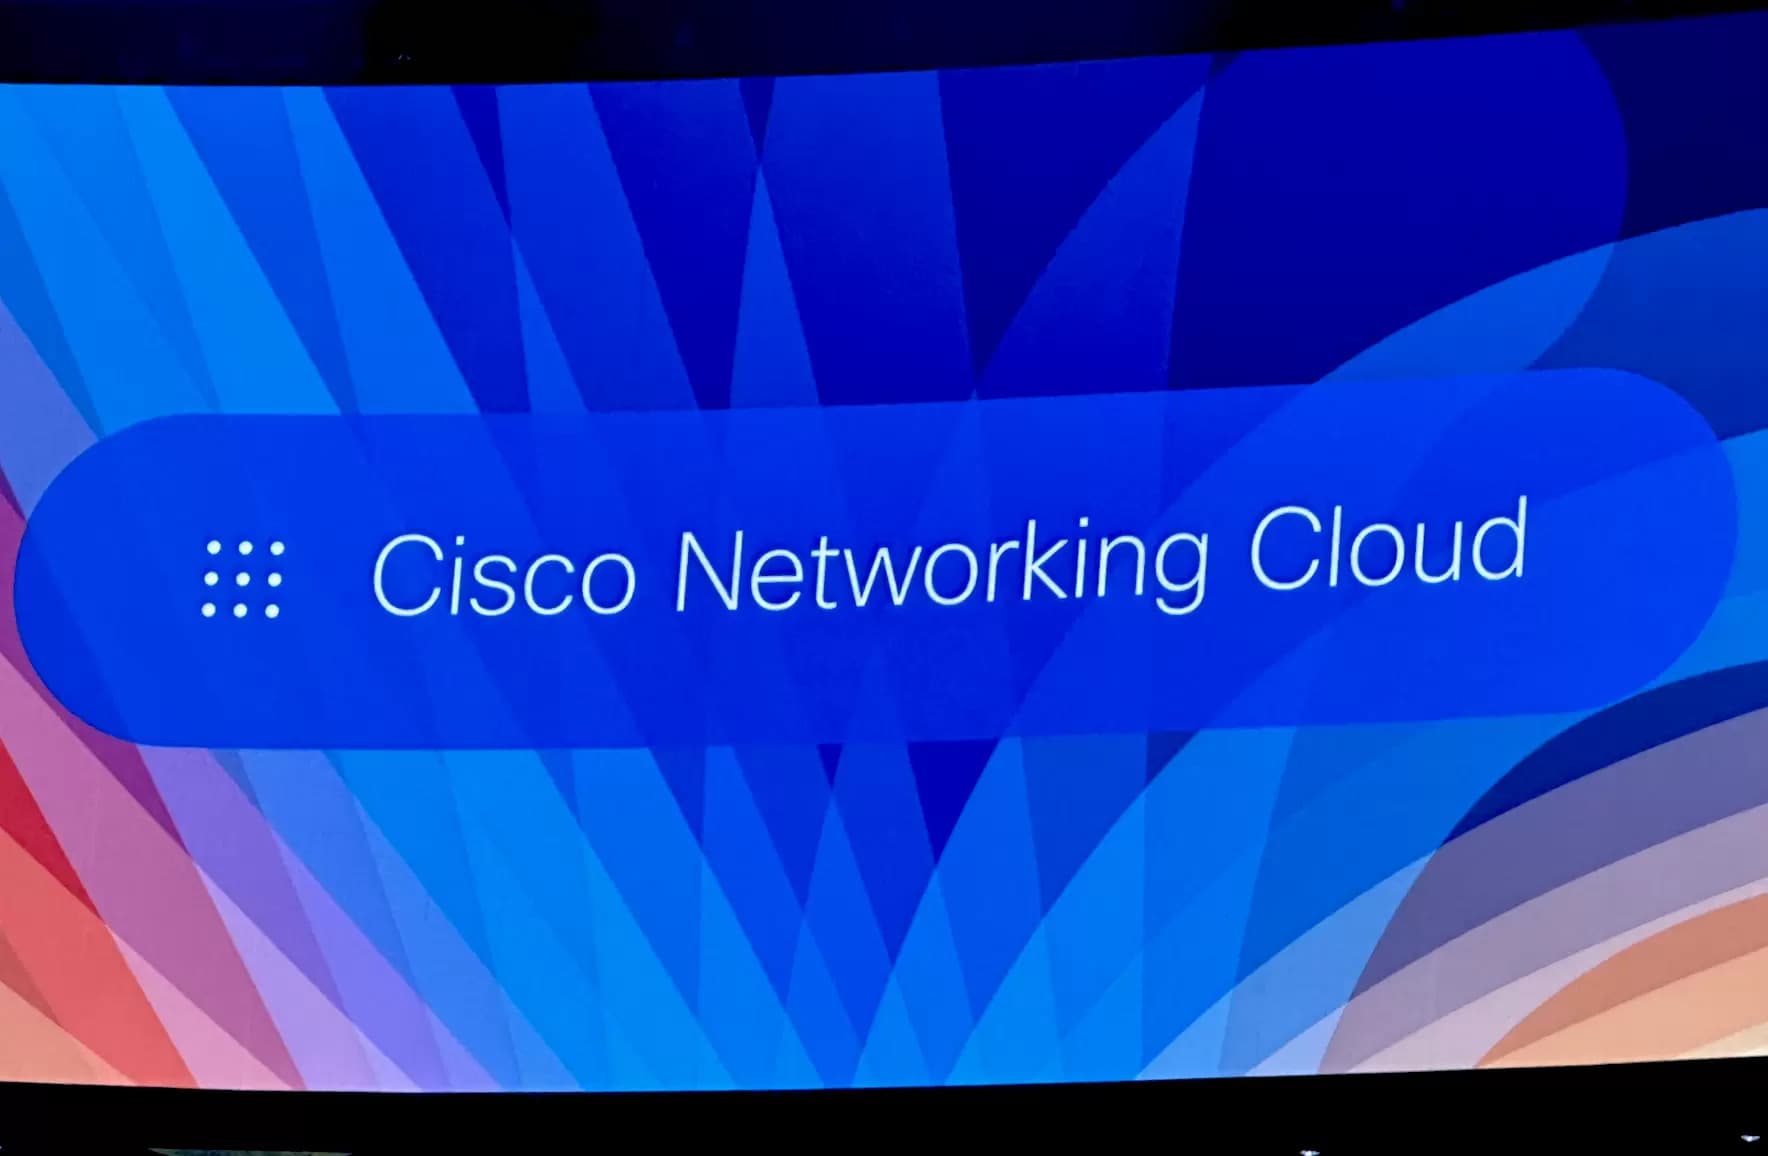 Cisco muestra su visión para simplificar las redes y conectar al mundo de forma segura